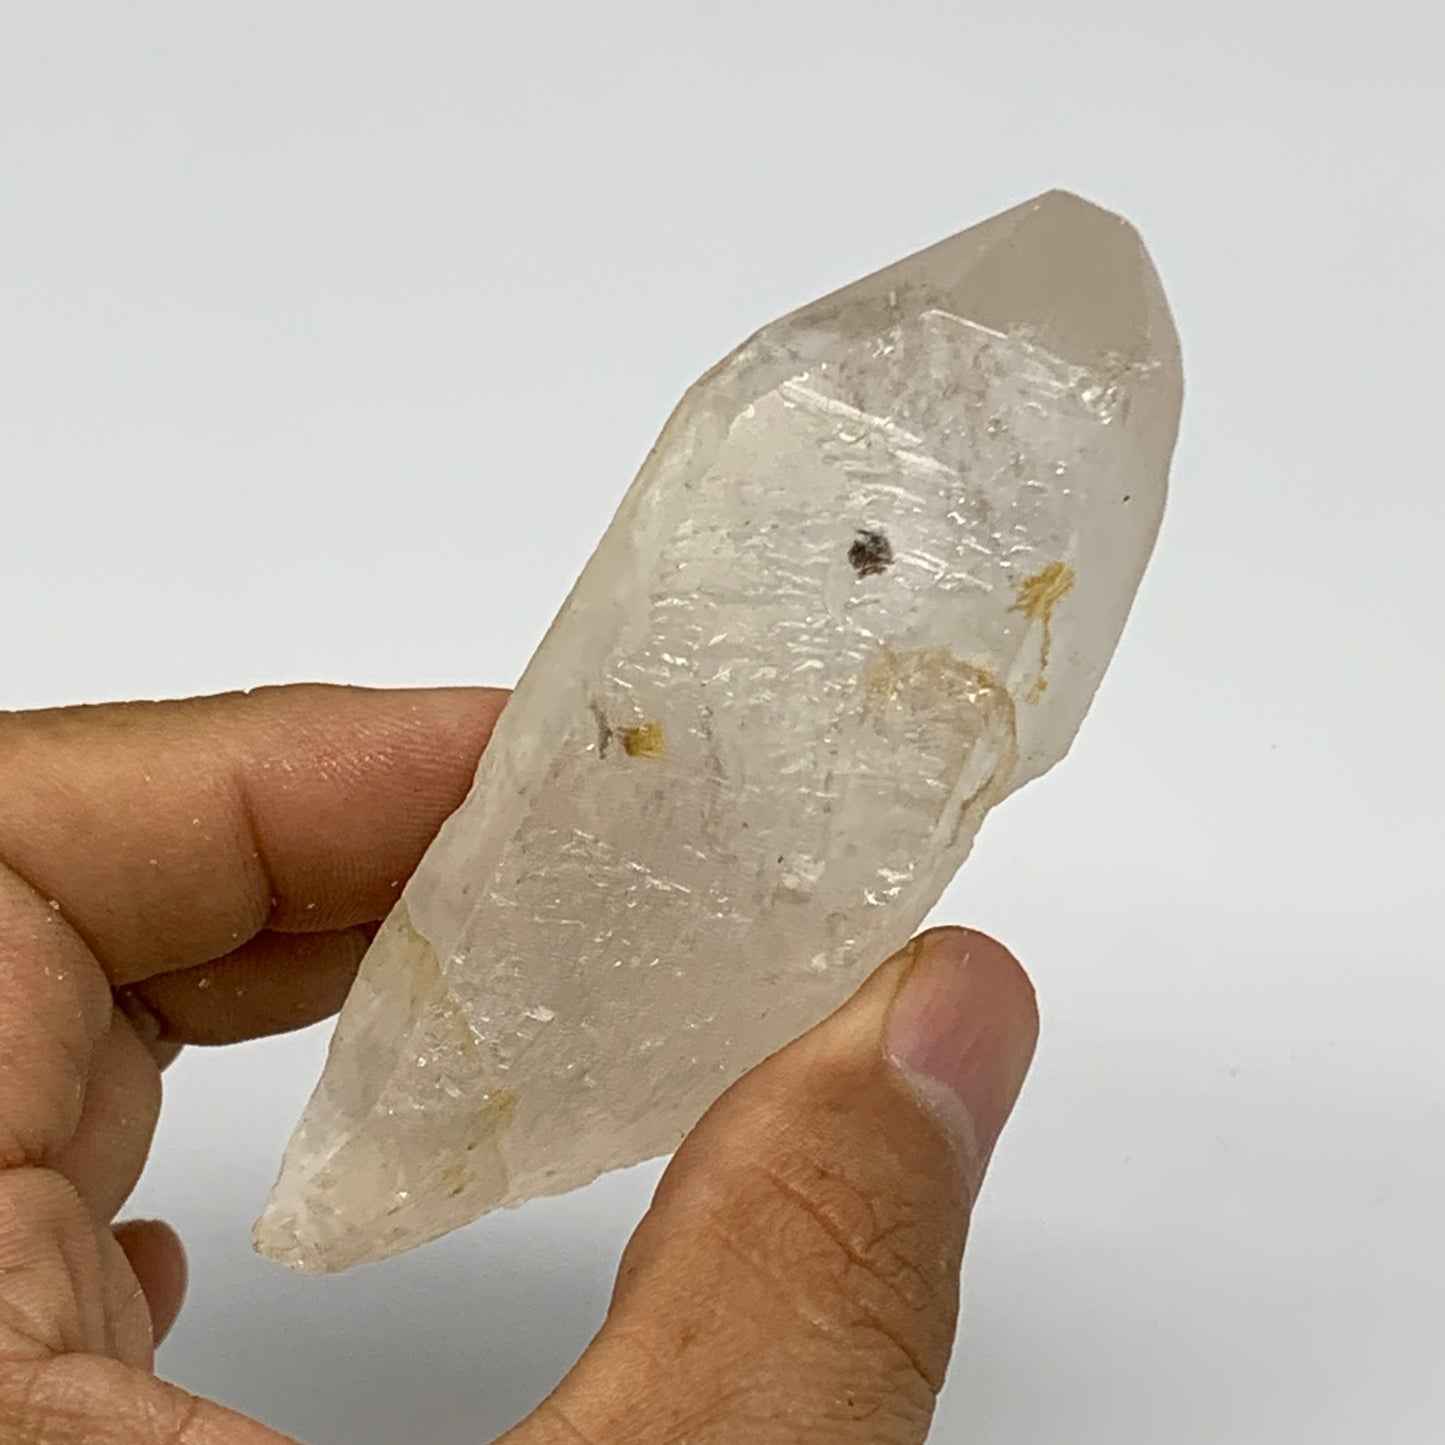 97.8g, 3.3"x1.6"x1.1", Lemurian Quartz Crystal Mineral Specimens @Brazil, B19280